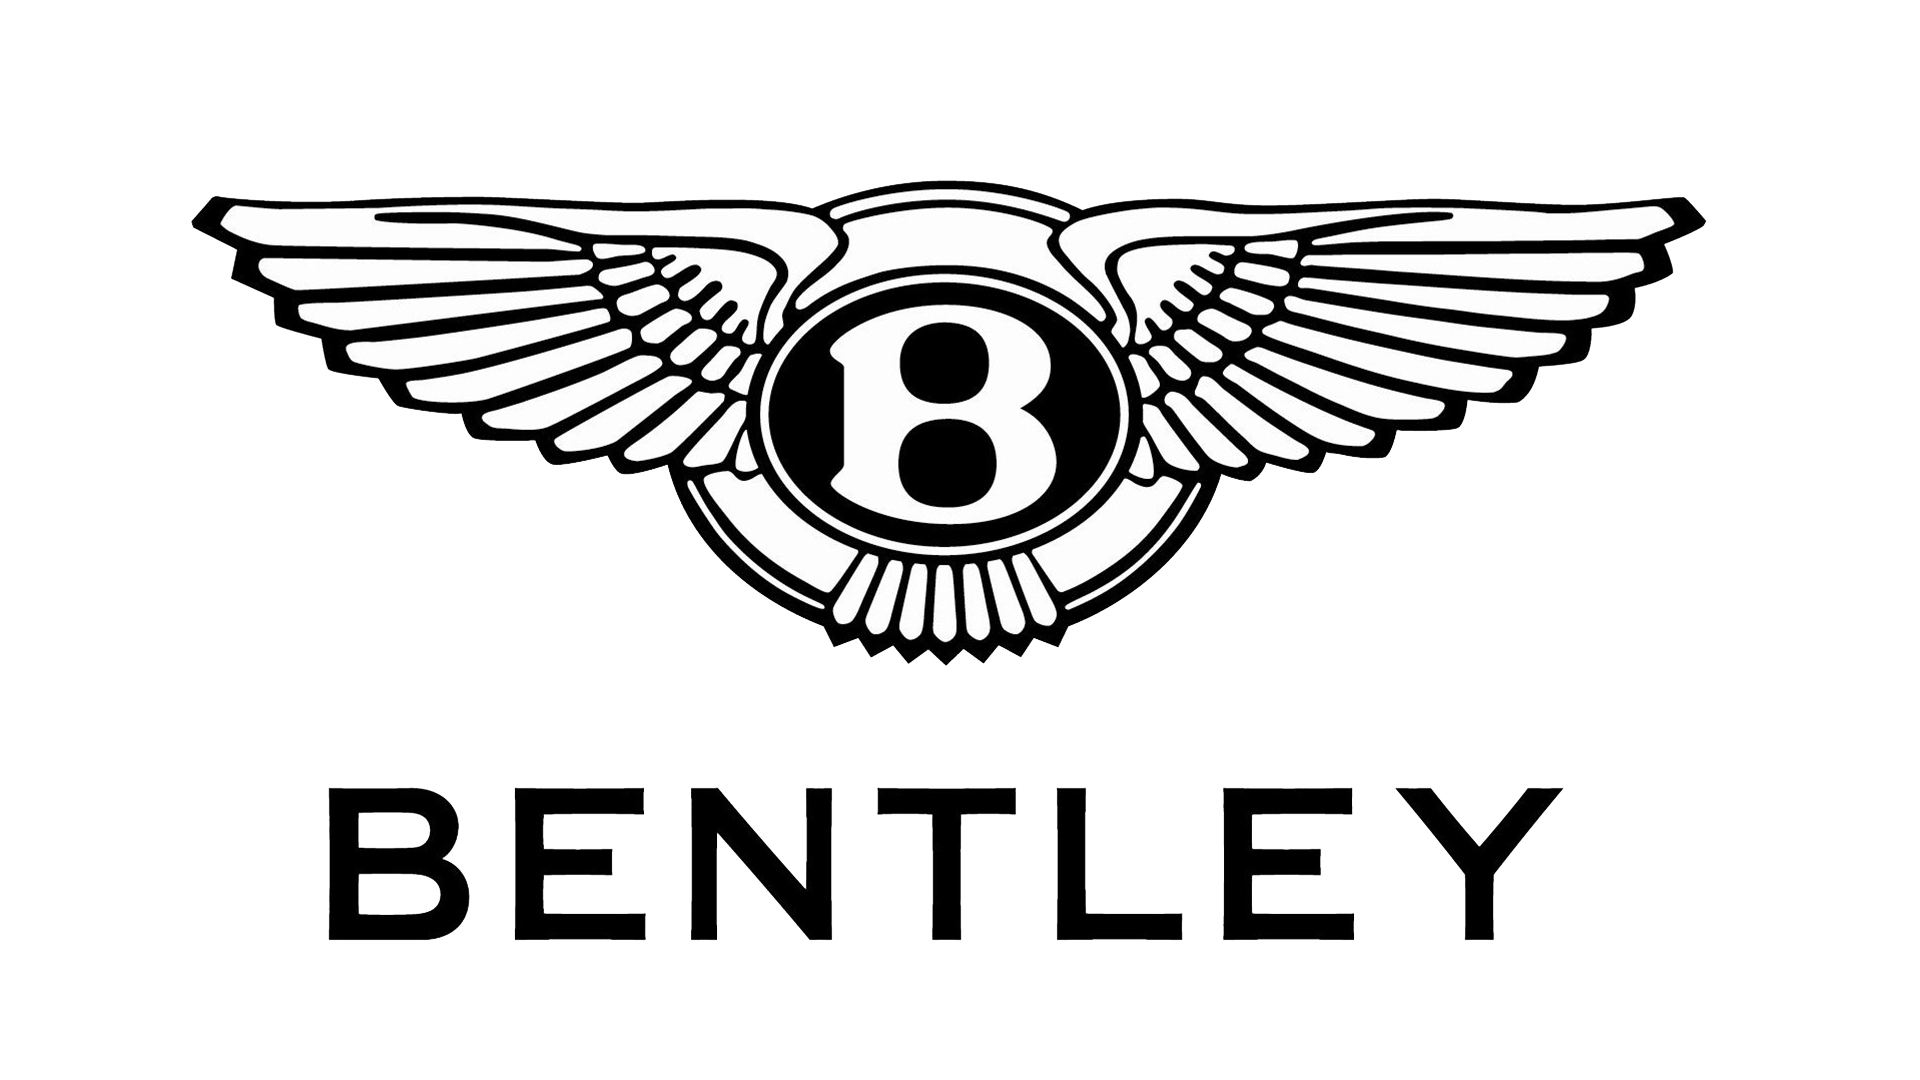 Bentley-symbol-black-1920x1080 - Trung tâm bảo hành sửa chữa ô tô ...